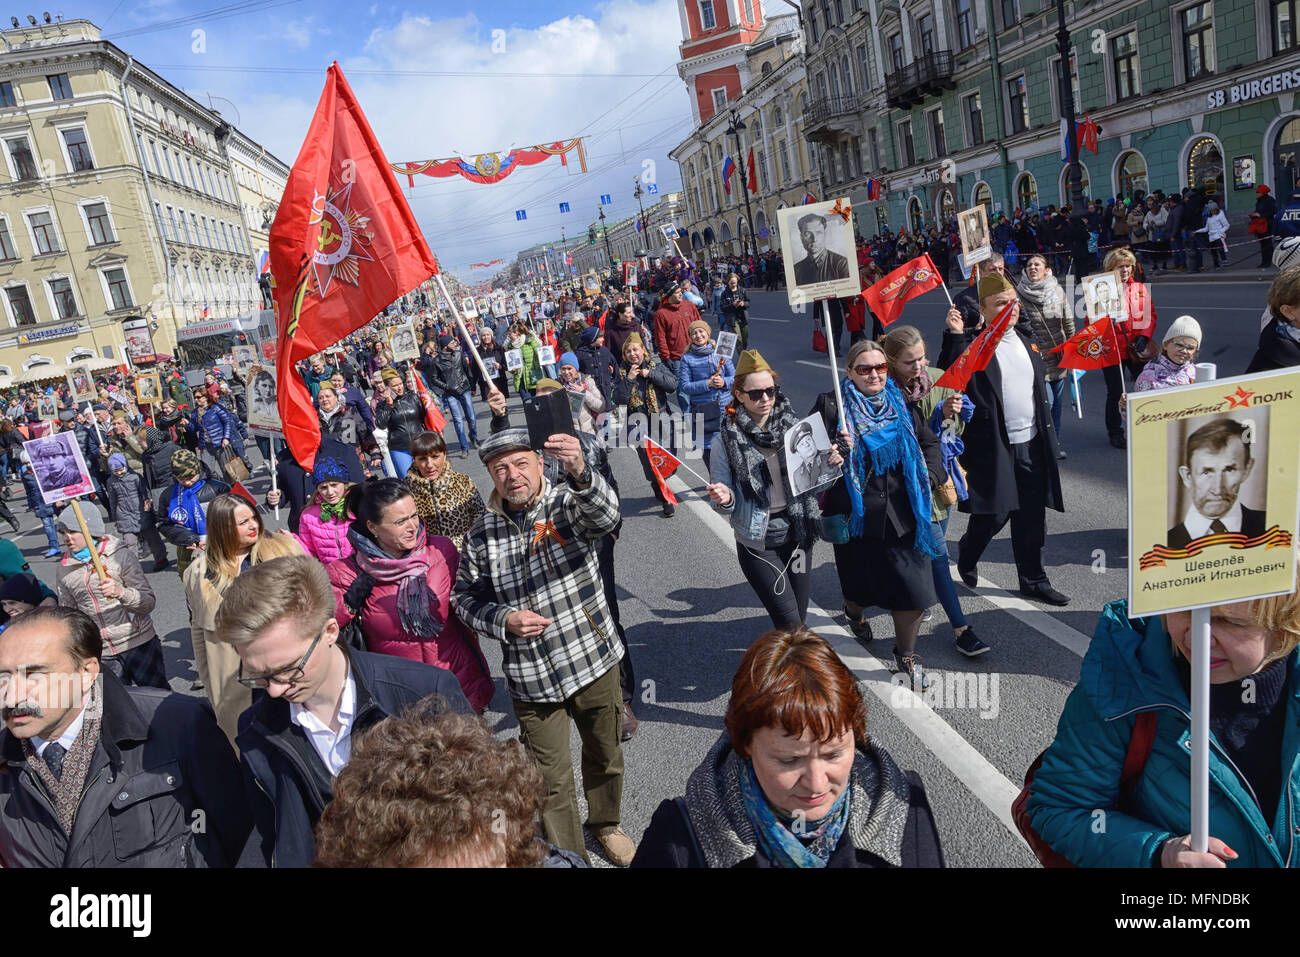 Régiment immortel - les gens portent des bannières avec une photographie de leurs ancêtres guerrier, Fête de la Victoire, la Perspective Nevski, à Saint-Pétersbourg, Russie Banque D'Images